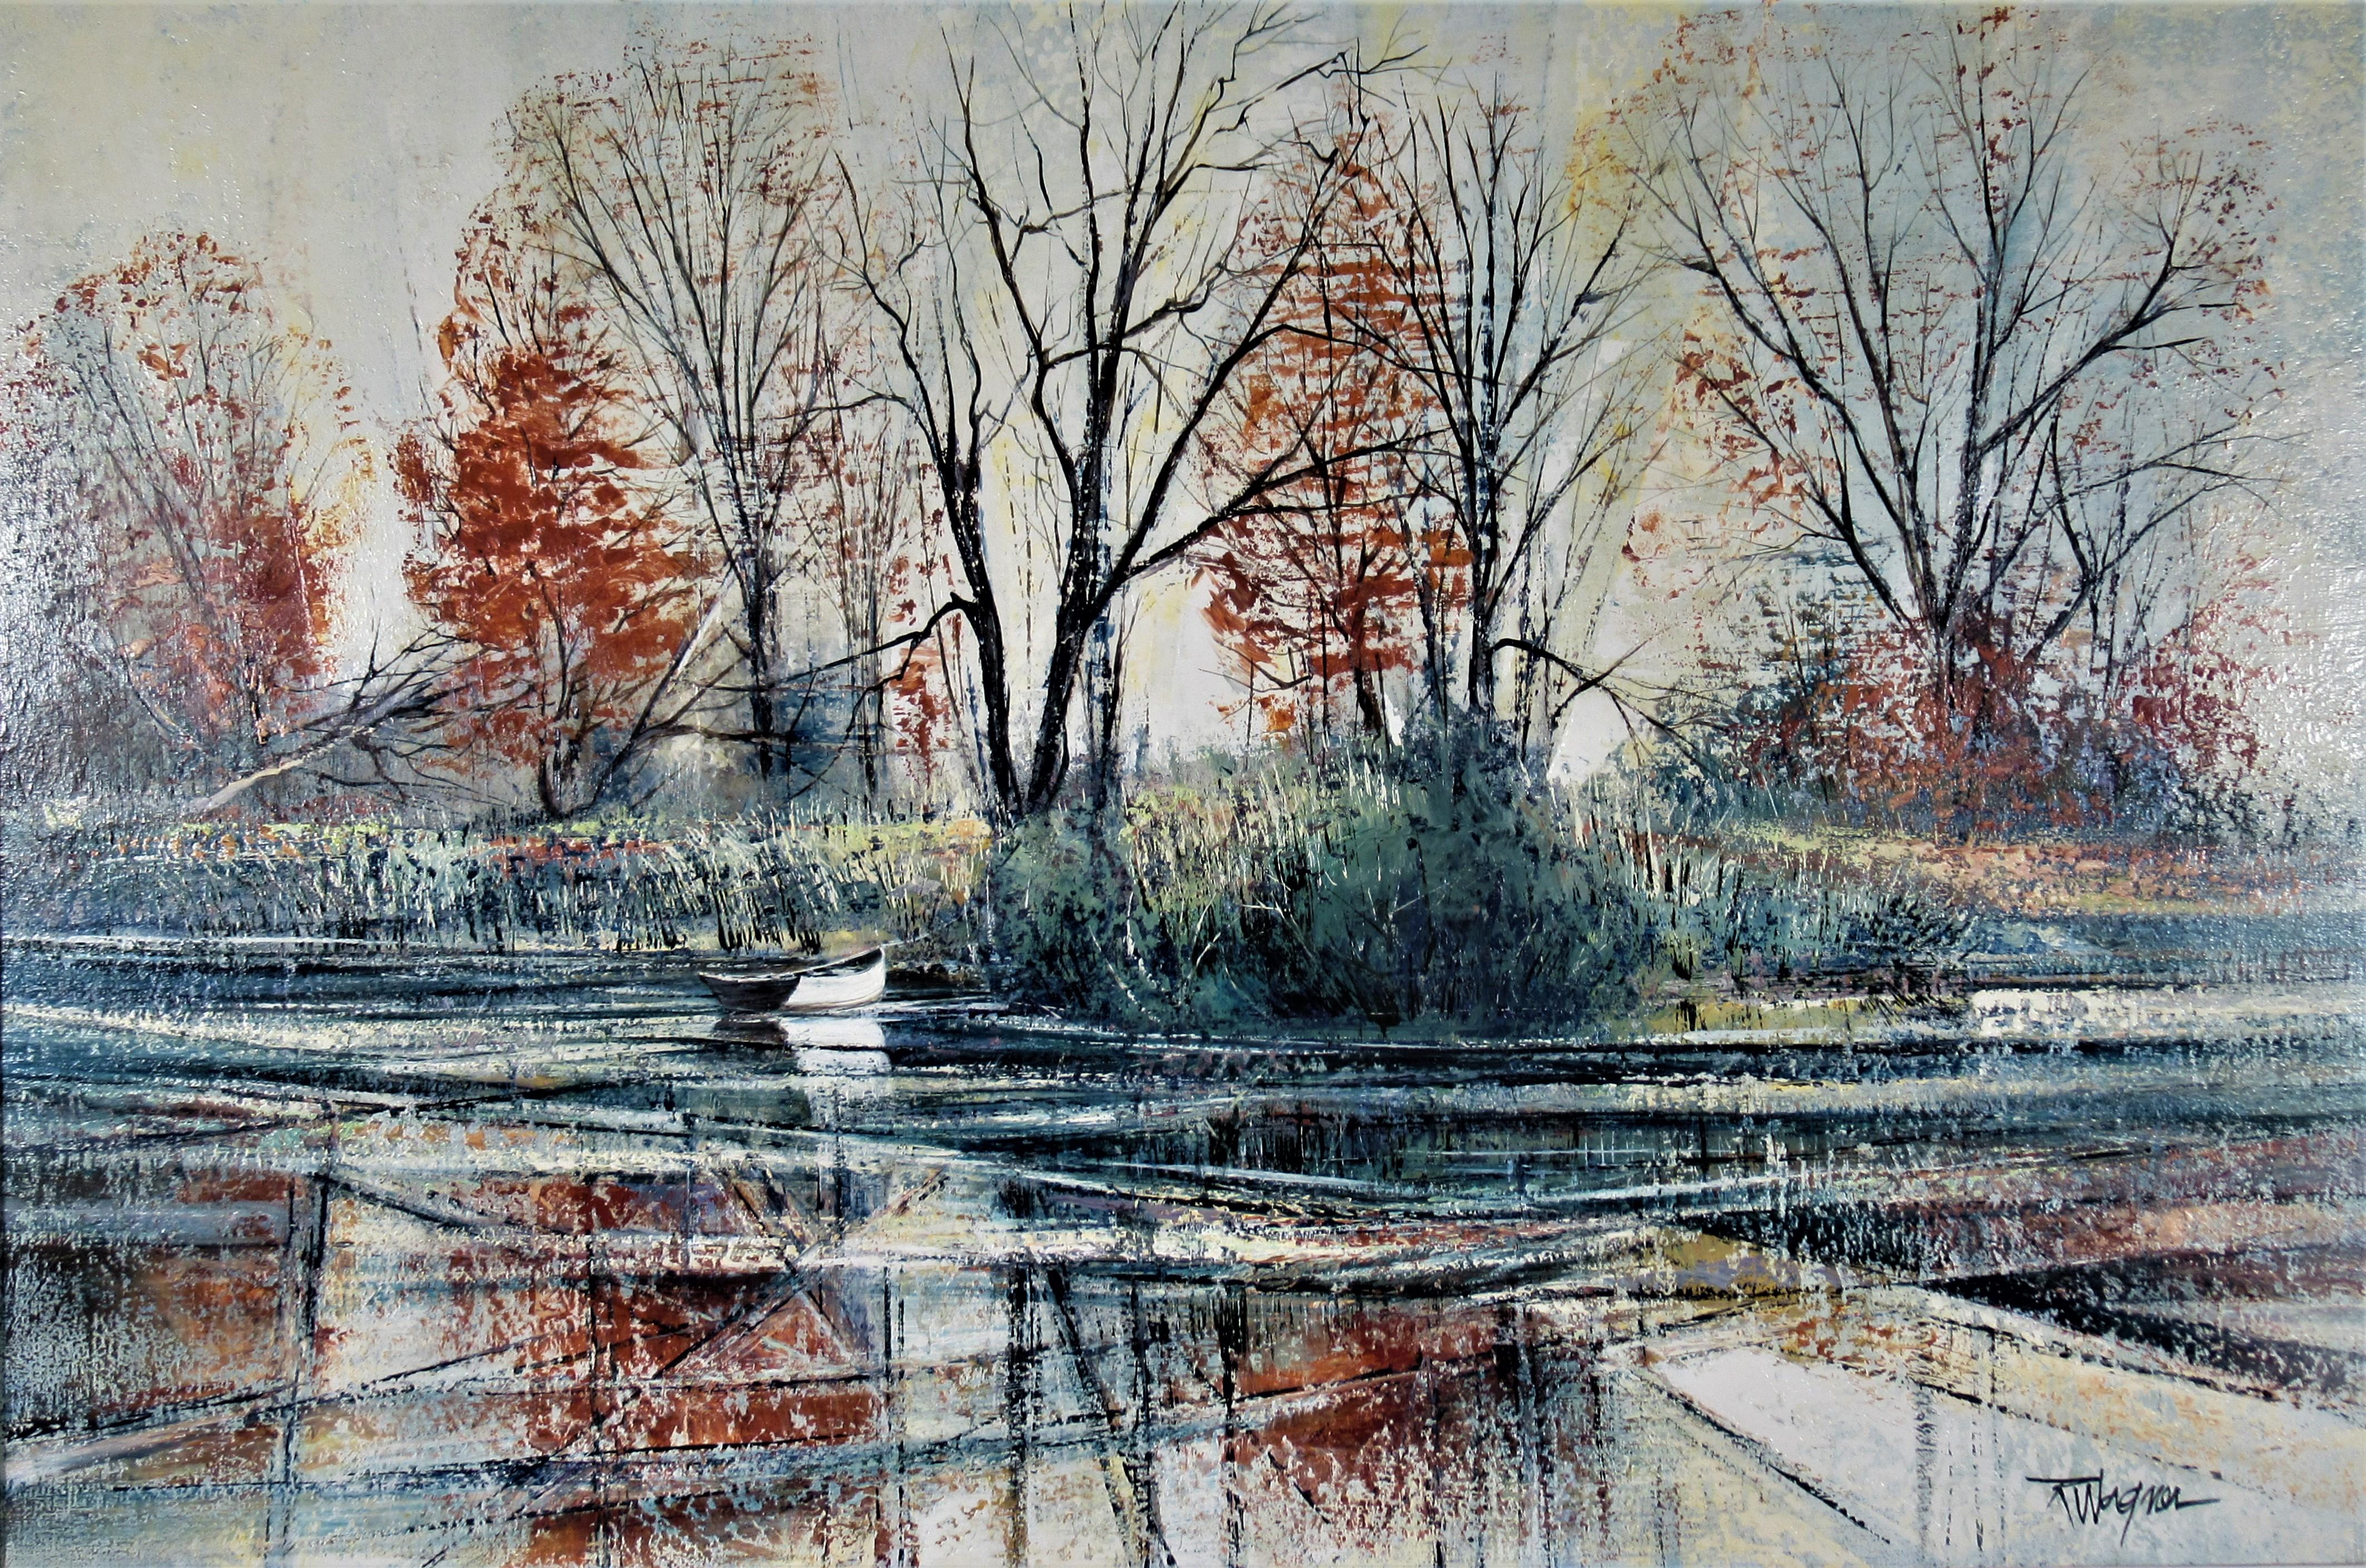 Banque de la rivière Automne - Painting de Richard Ellis Wagner